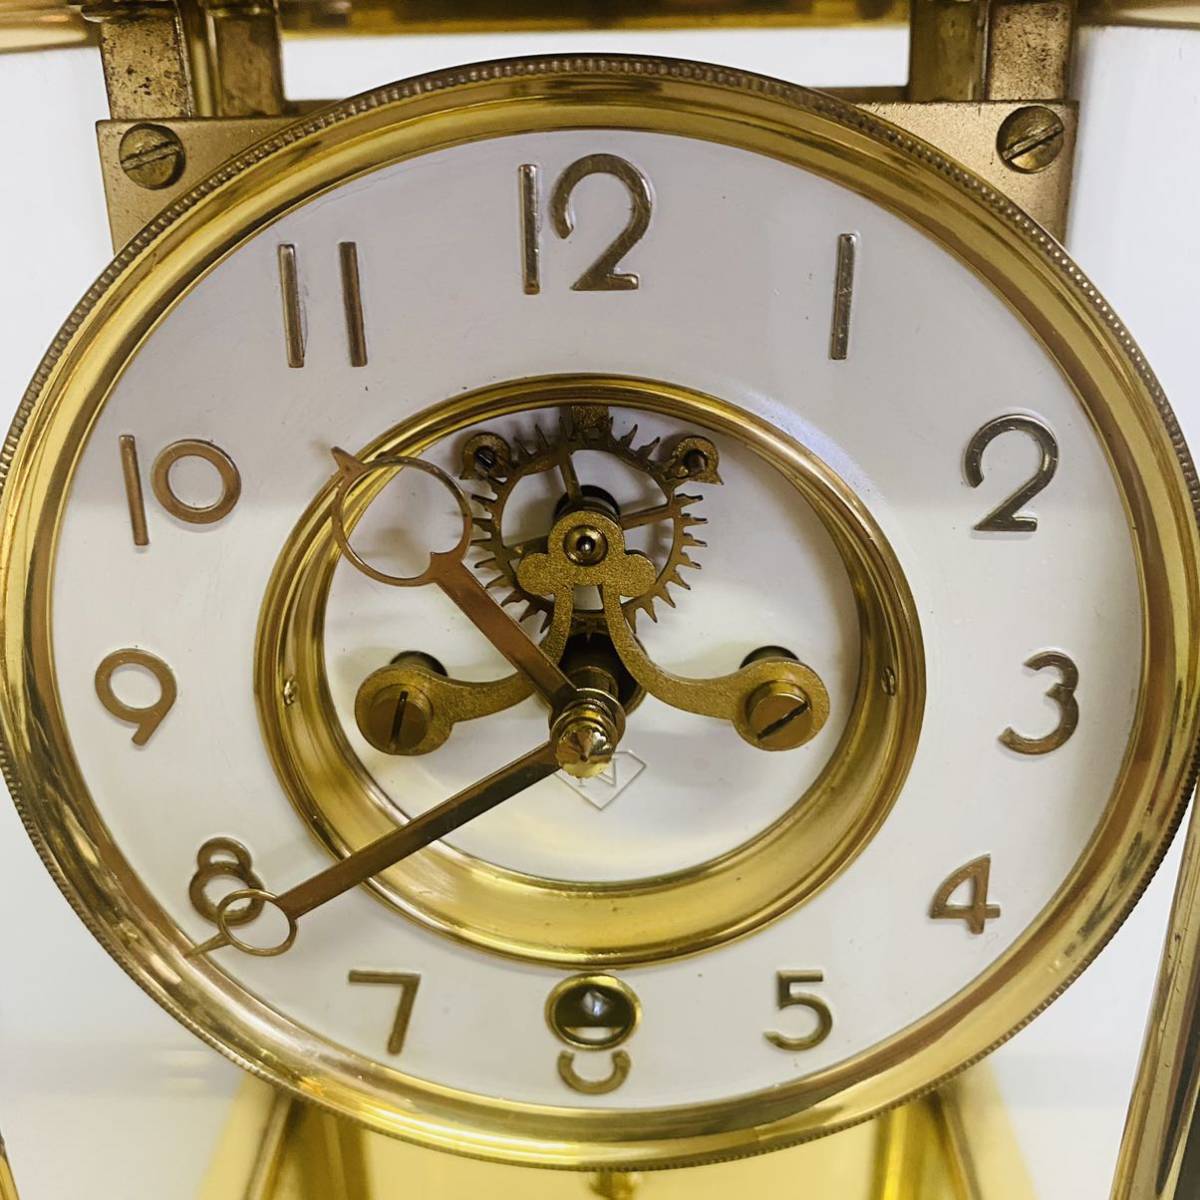 日本美術時計株式会社 Nマーク 振り子時計 水銀時計 置時計 四面ガラス